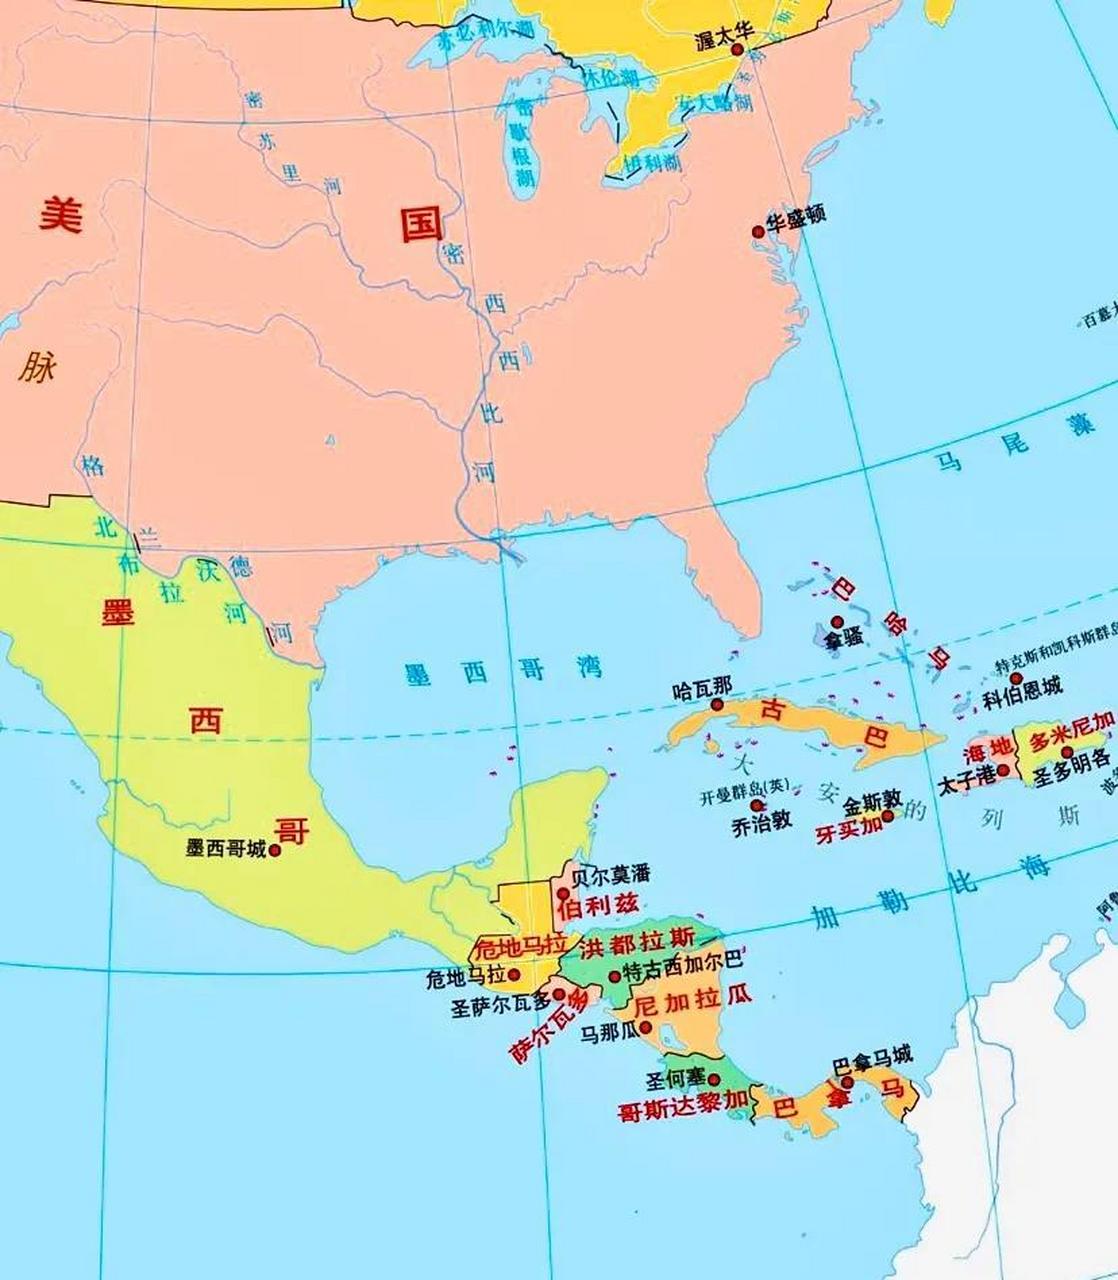 洪都拉斯地理位置图片